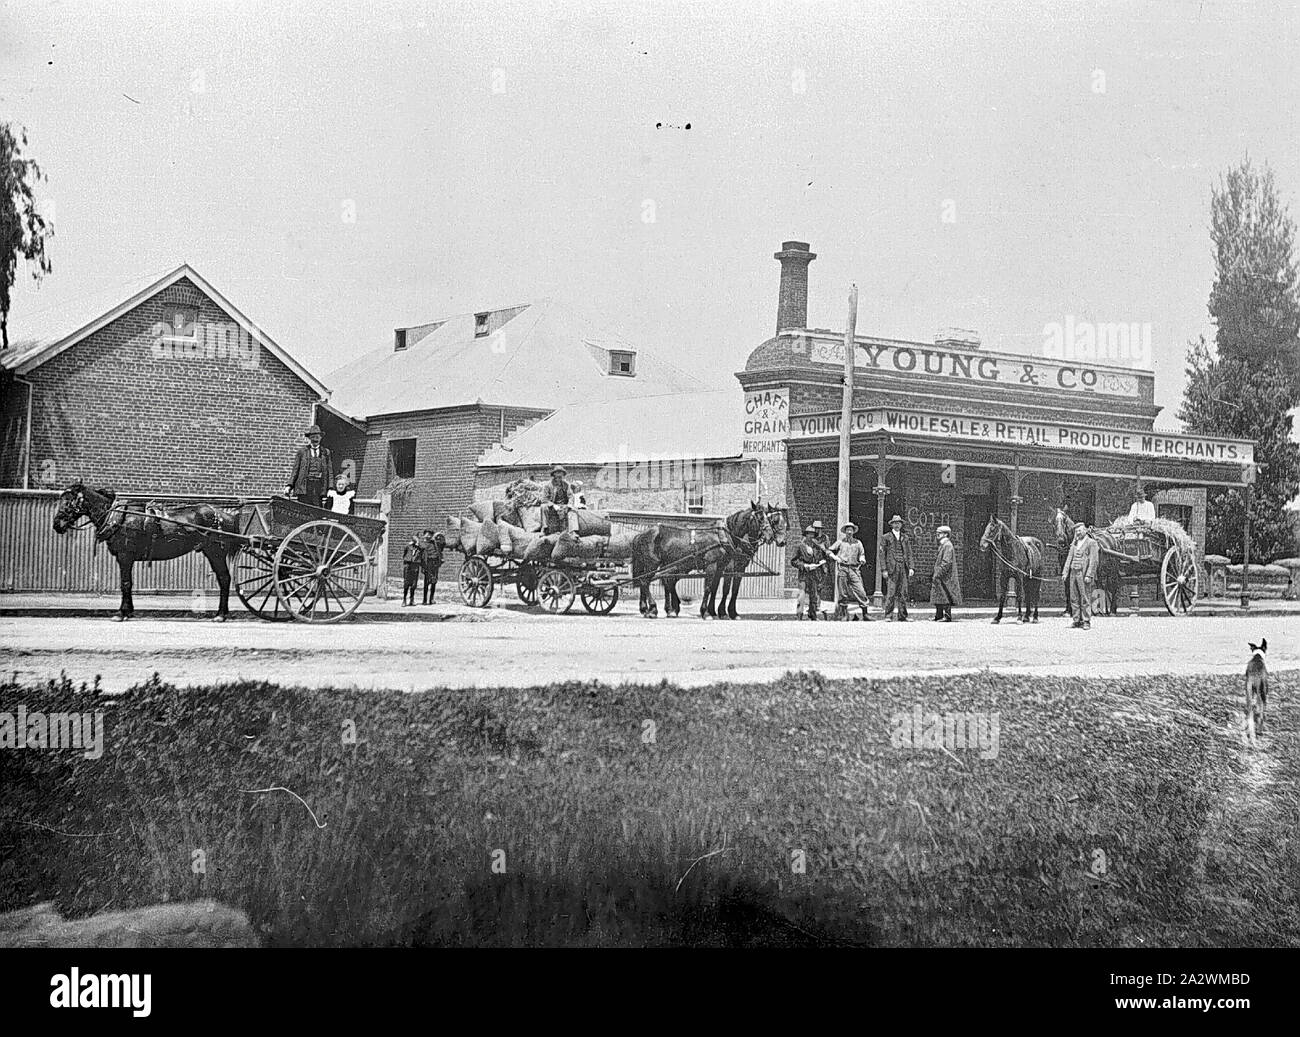 Negativo - Cavallo & carrelli e Carri caricati al di fuori di giovani & Company, Ballarat East, Victoria, circa 1905, cavalli e carri e carri caricati al di fuori di giovani & Company, commercio all'ingrosso e vendita al dettaglio di produrre i commercianti Foto Stock